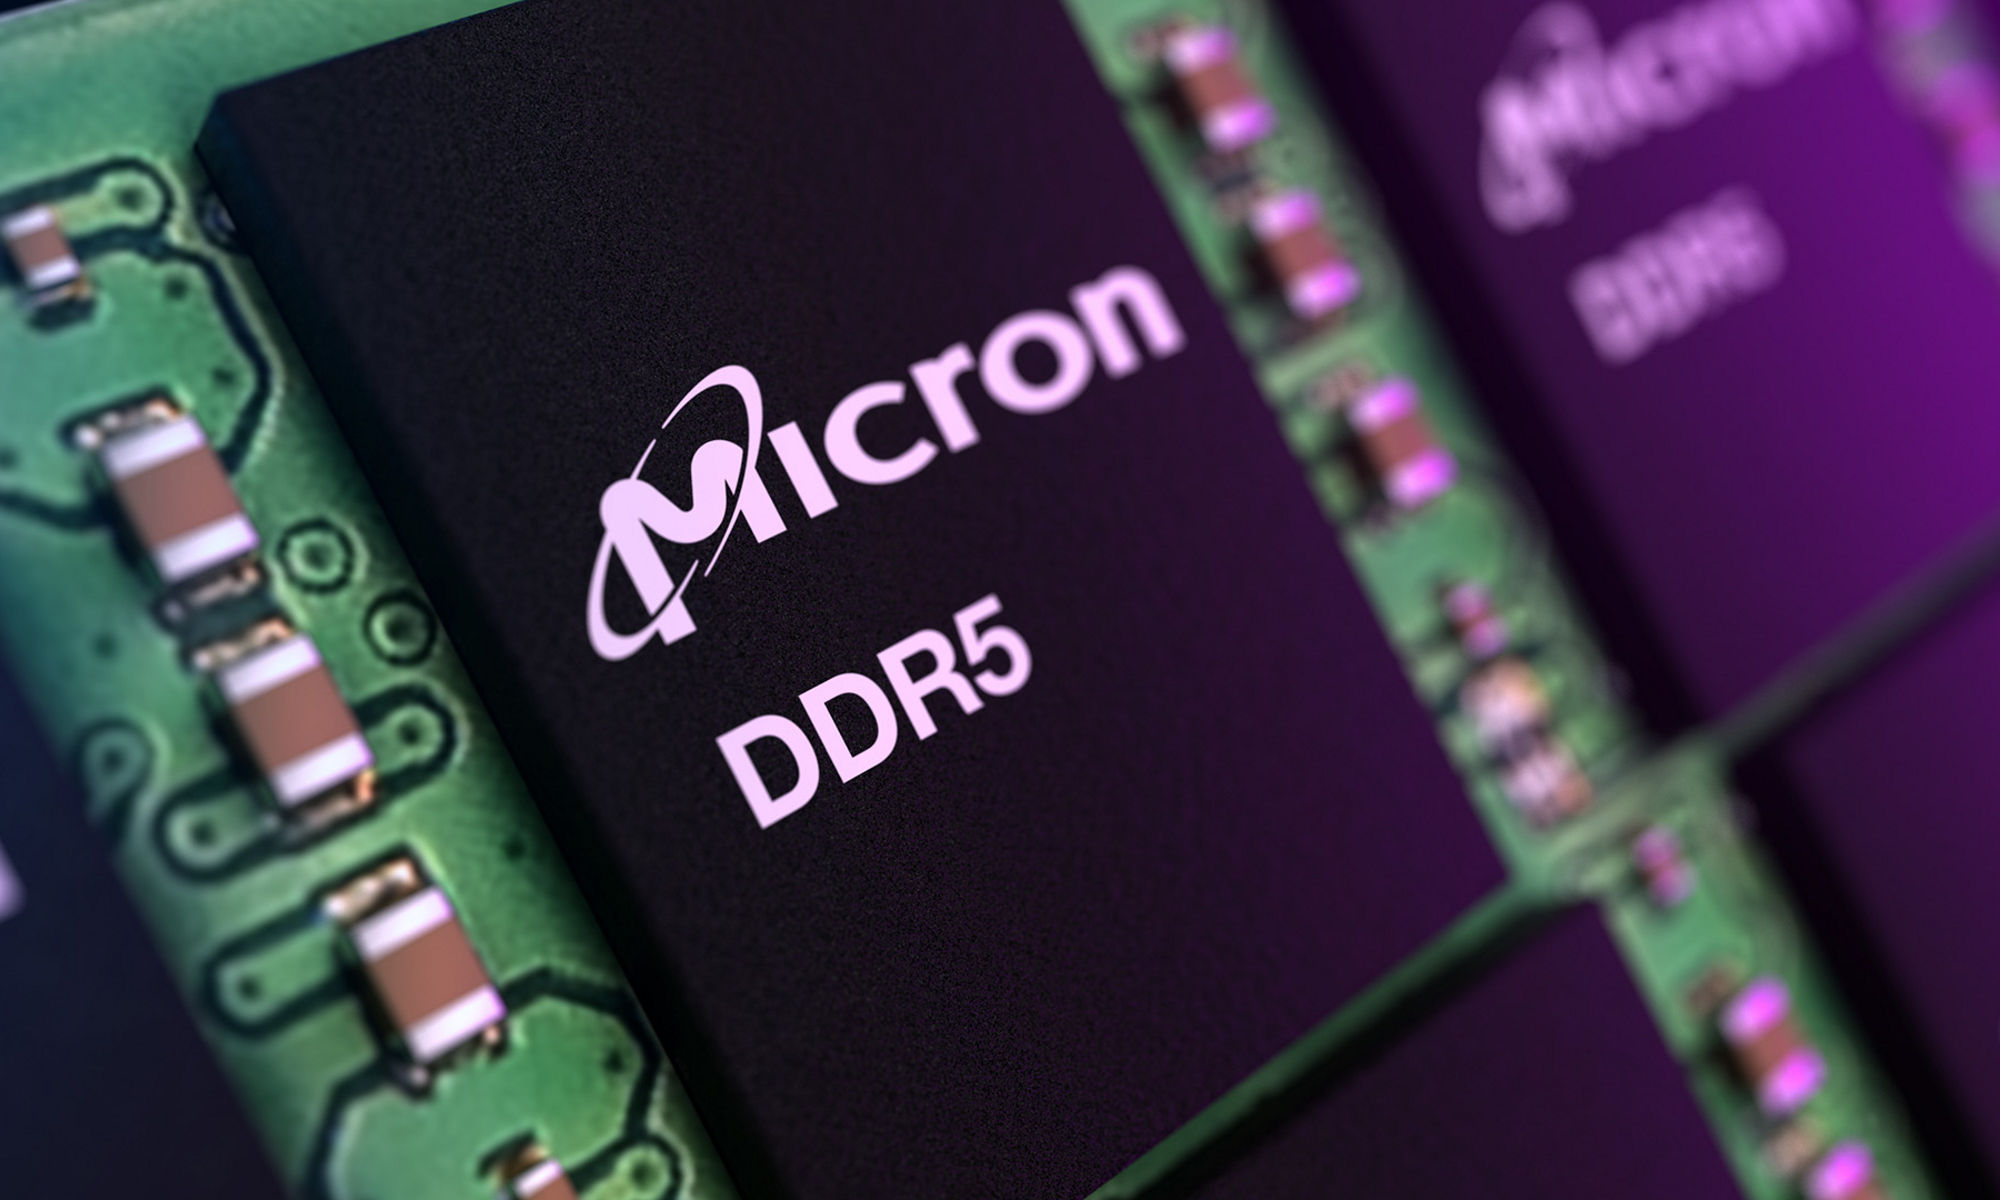 DDR5 RDIMM